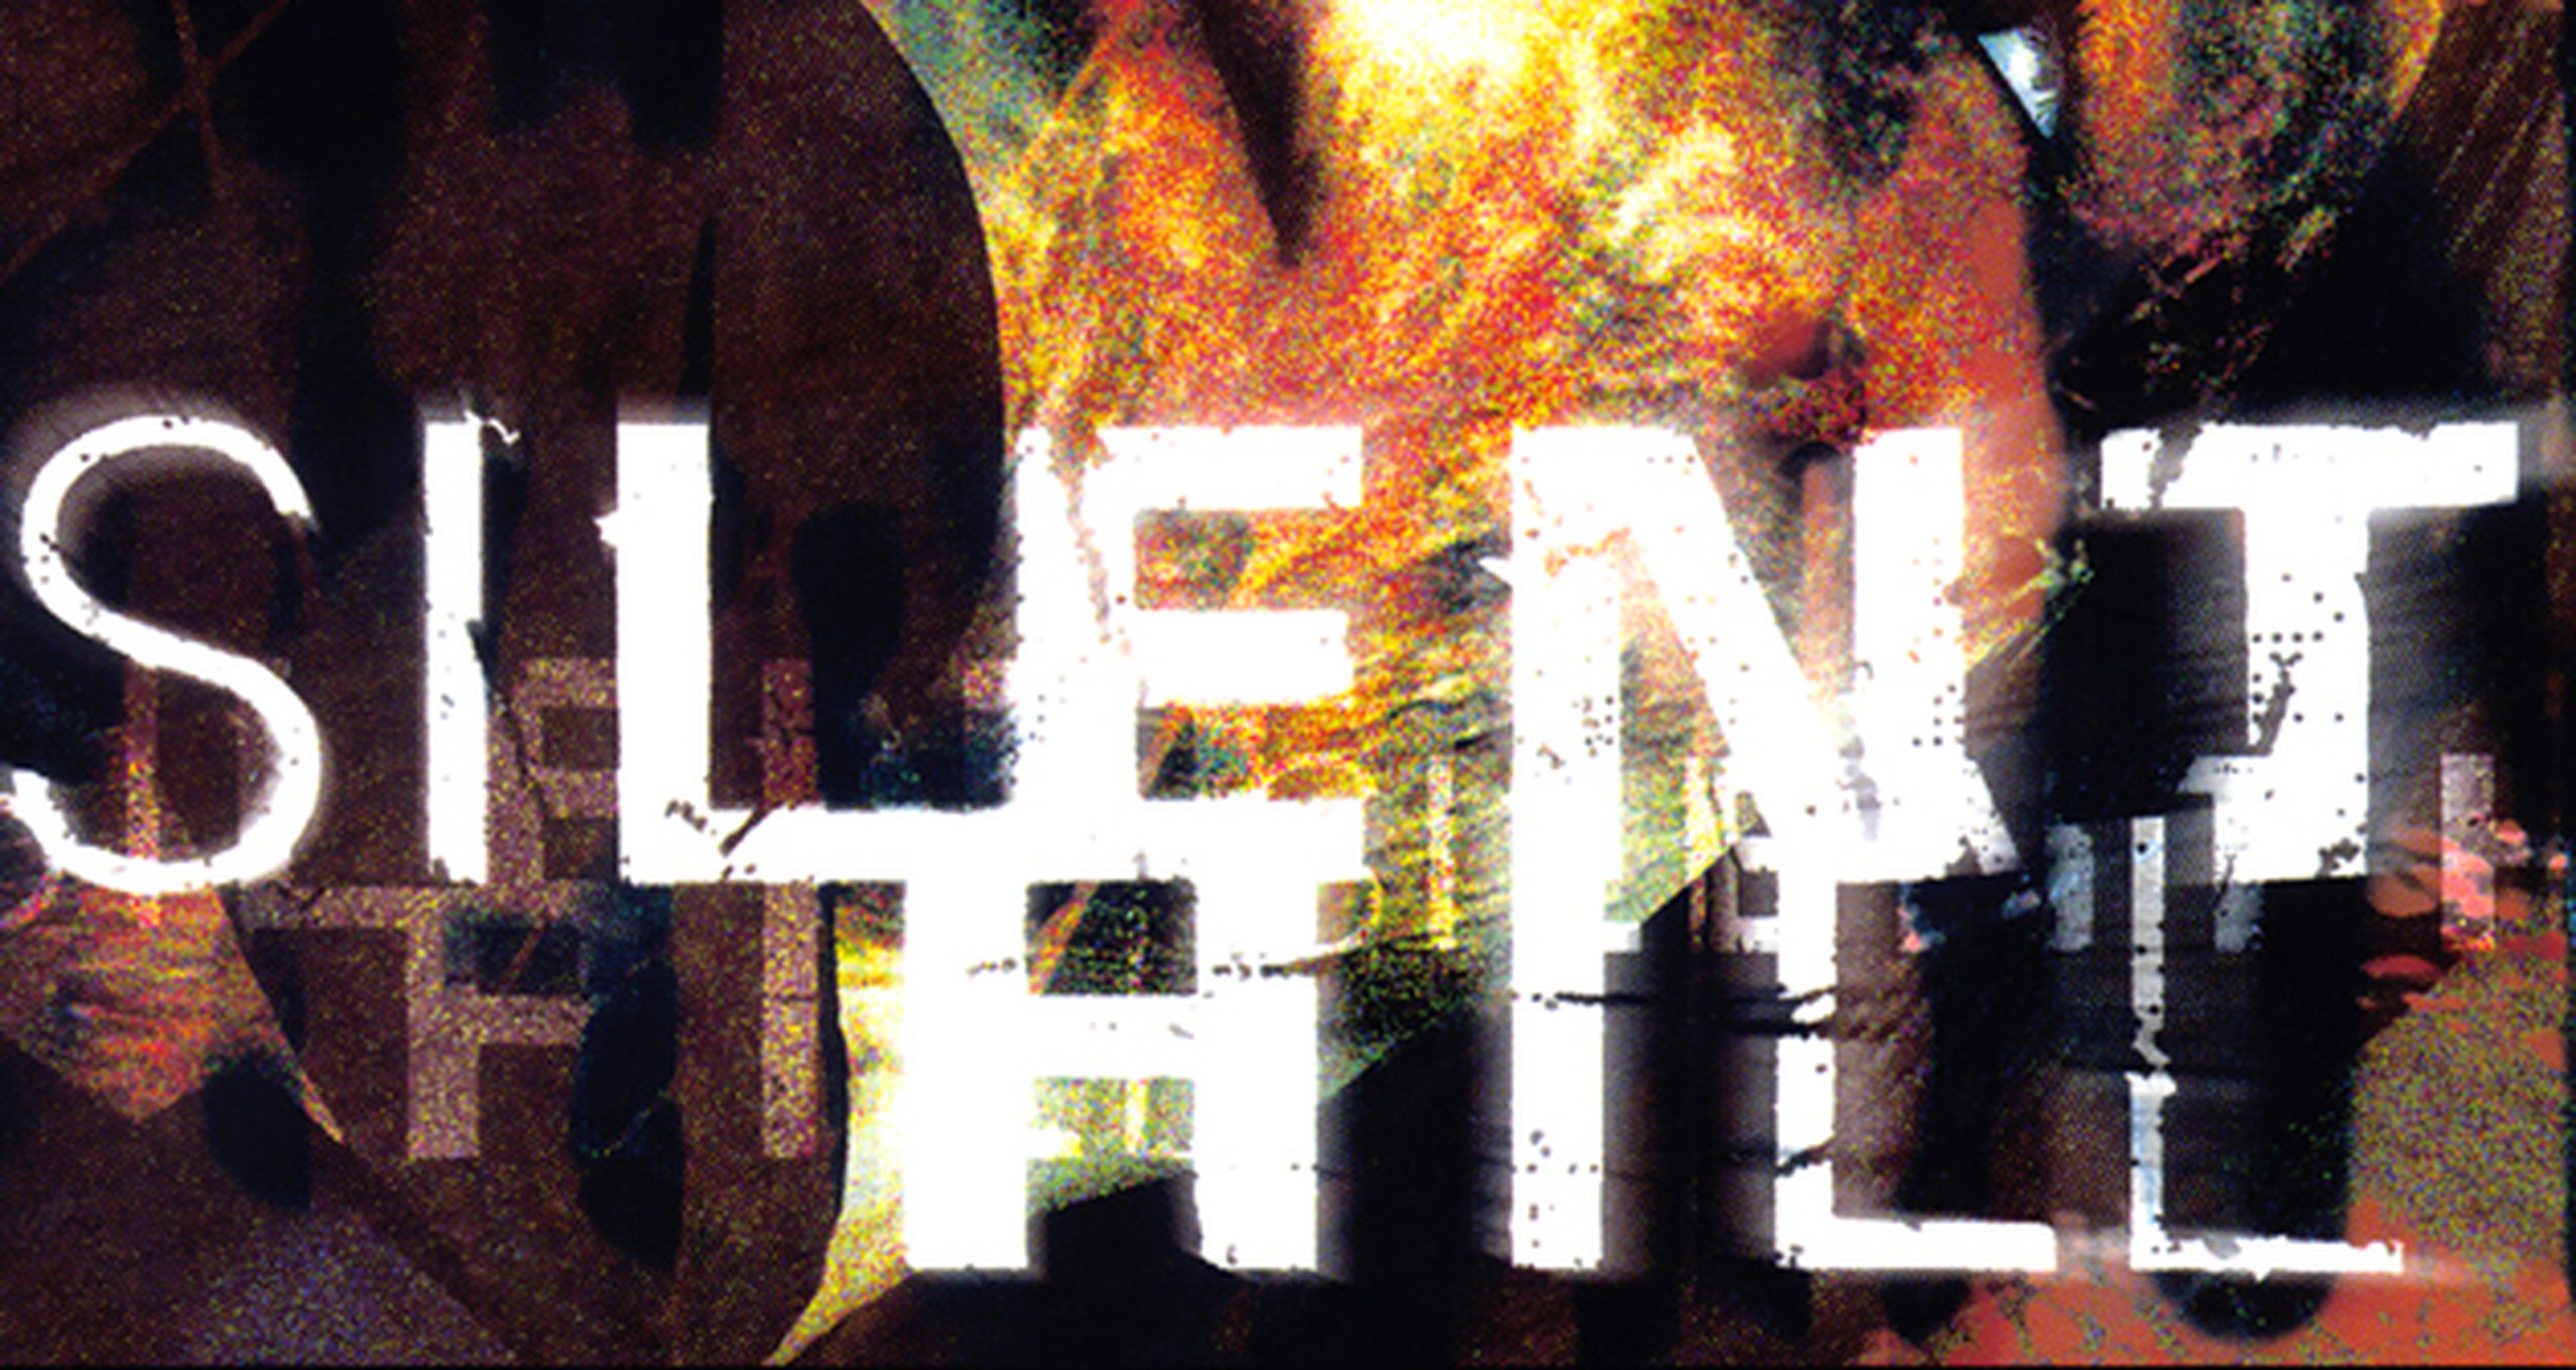 Silent Hill cumple hoy 15 años desde su lanzamiento